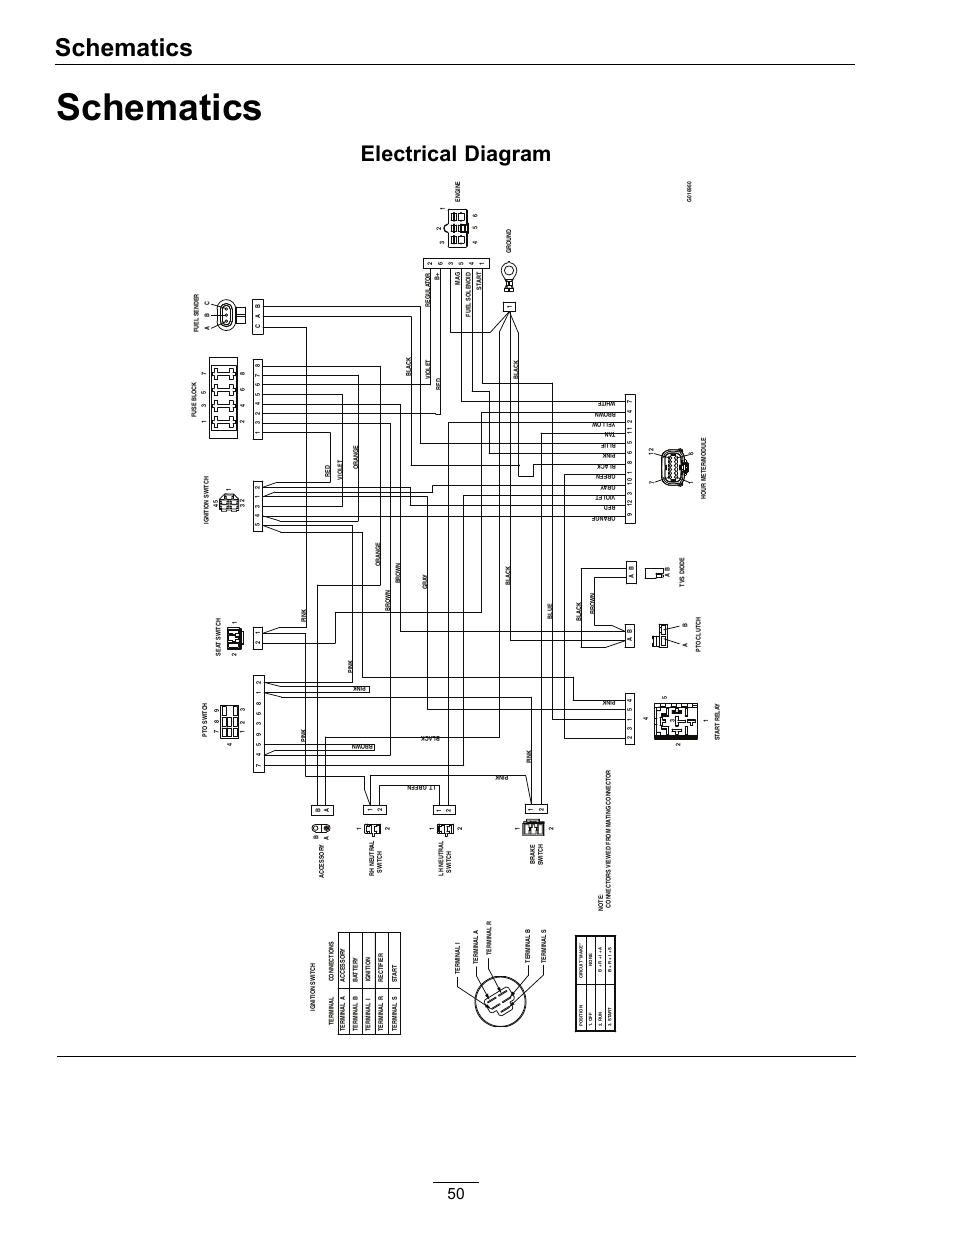 wiring diagram for cutler hammer motor starter